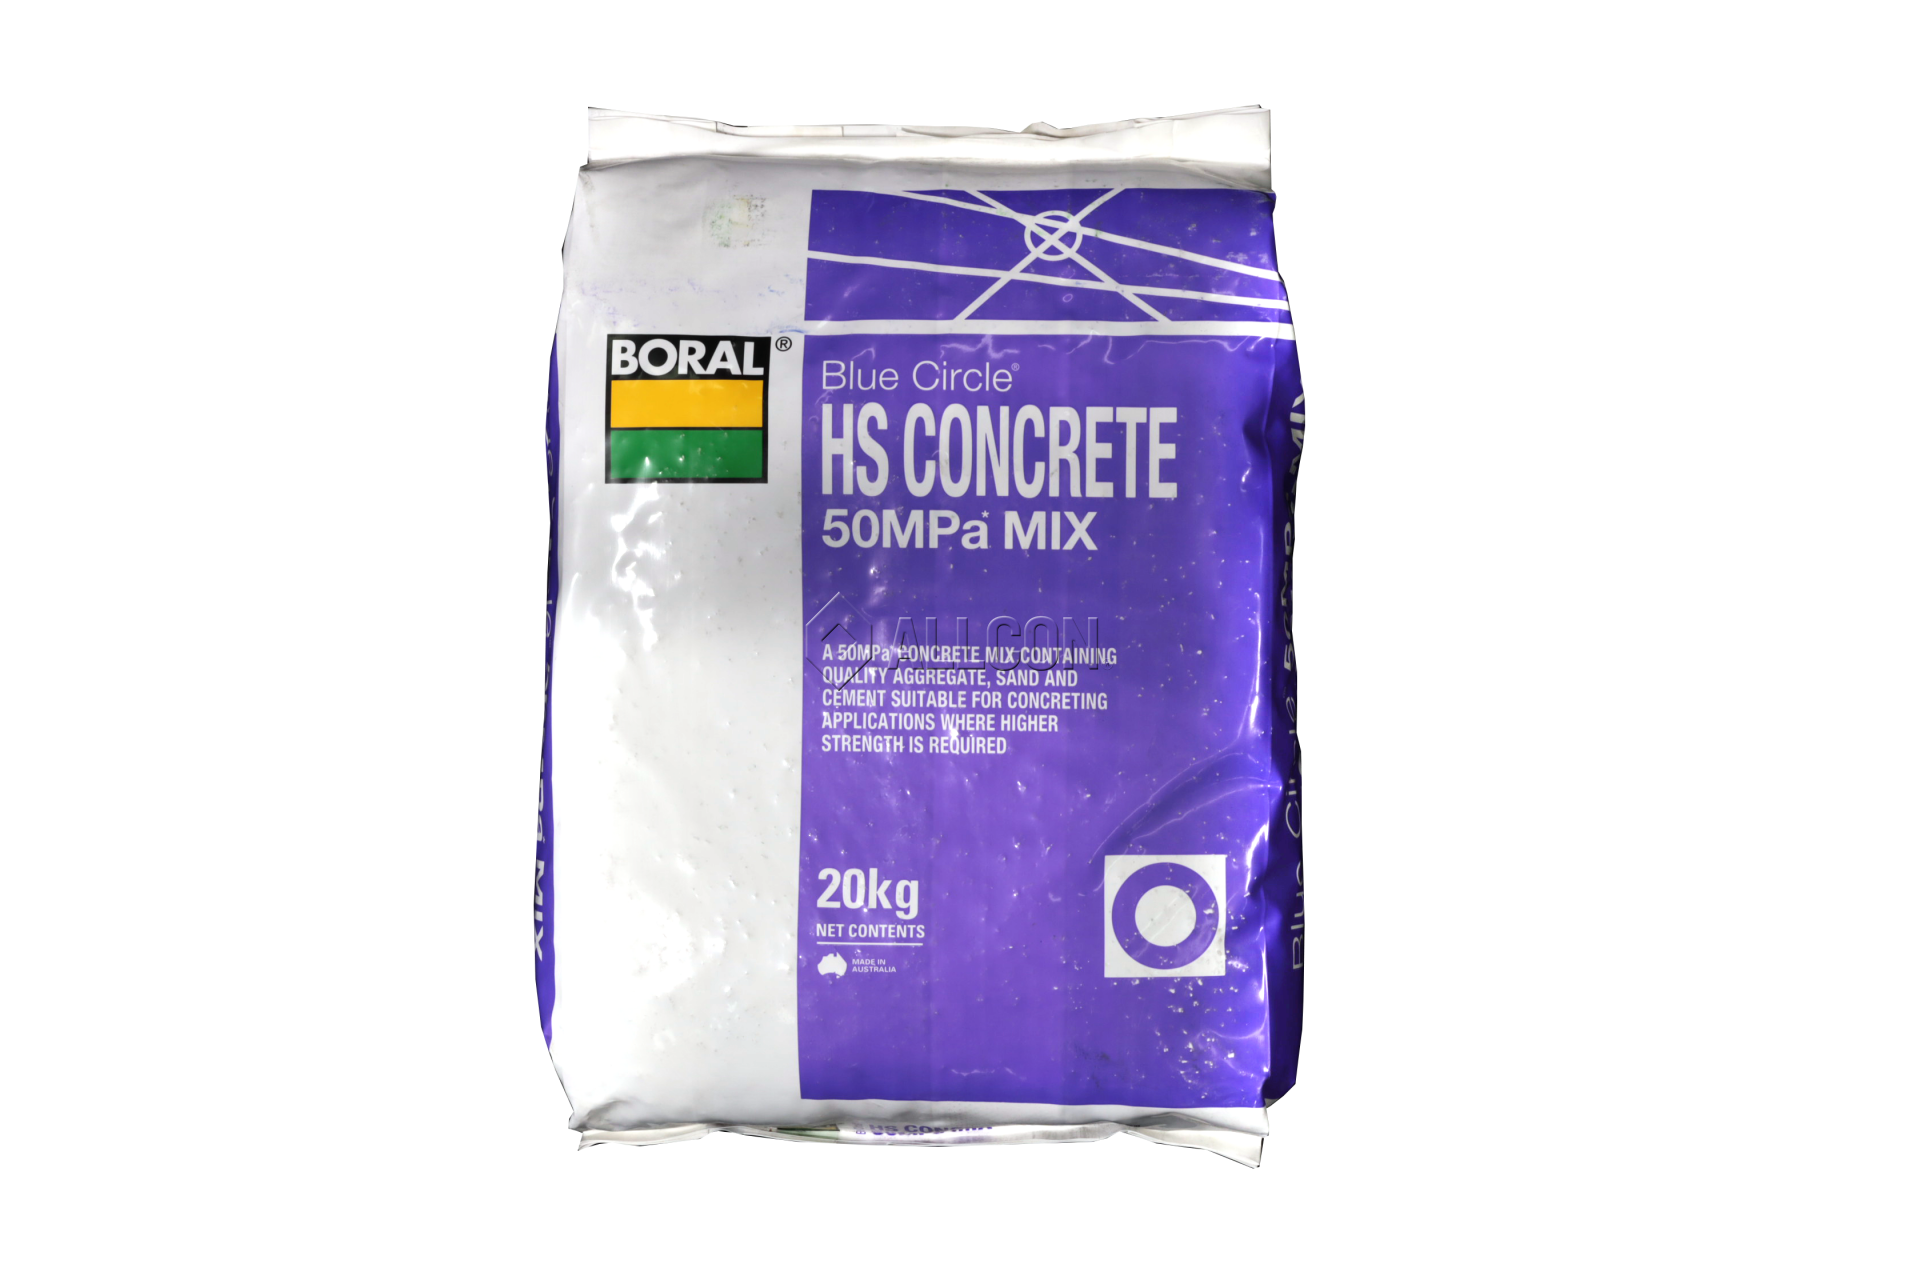 Boral HS Concrete 50MPa Mix